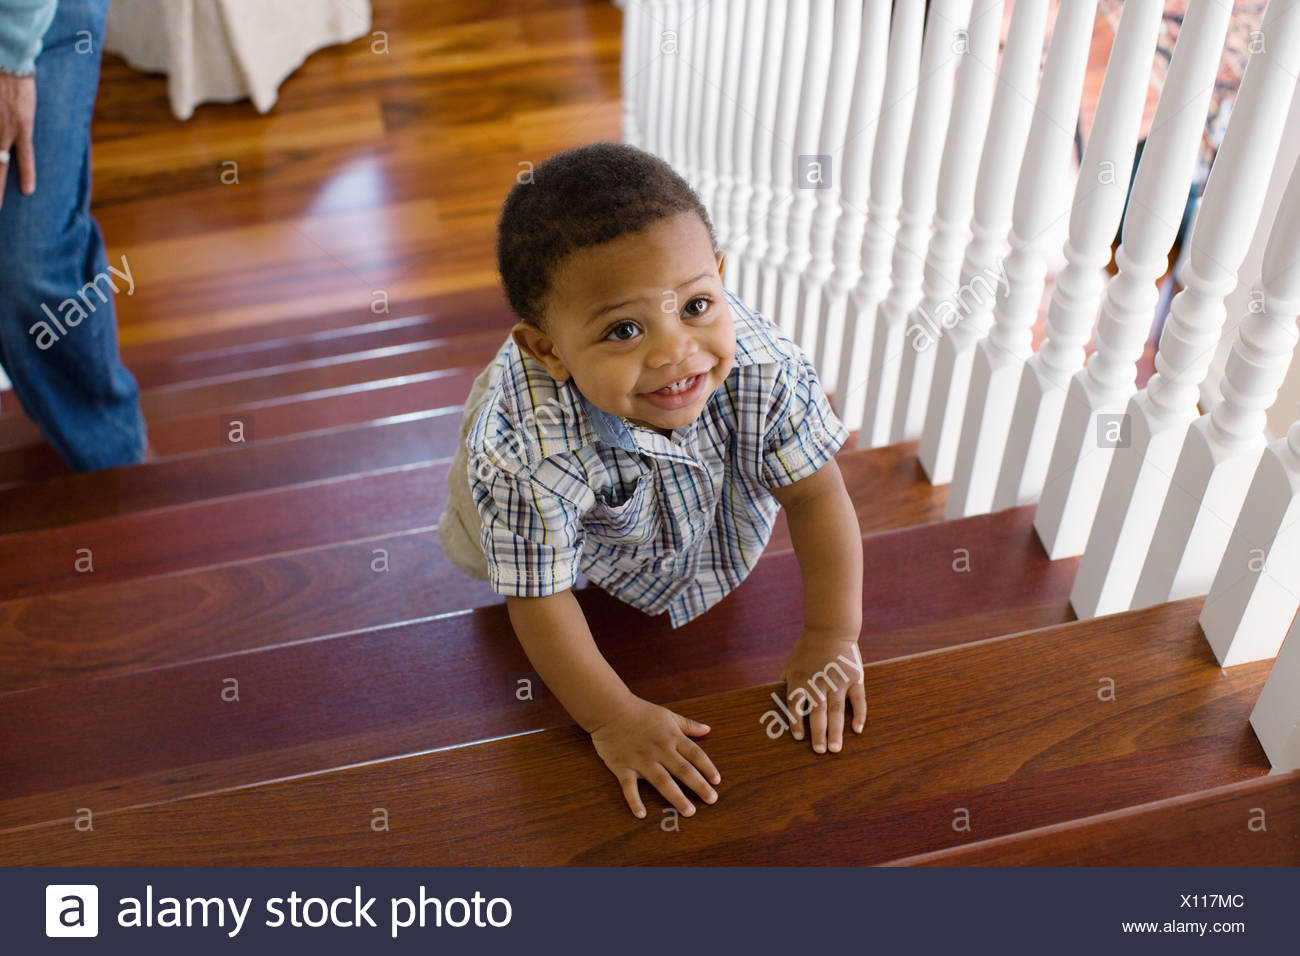 baby climb stairs